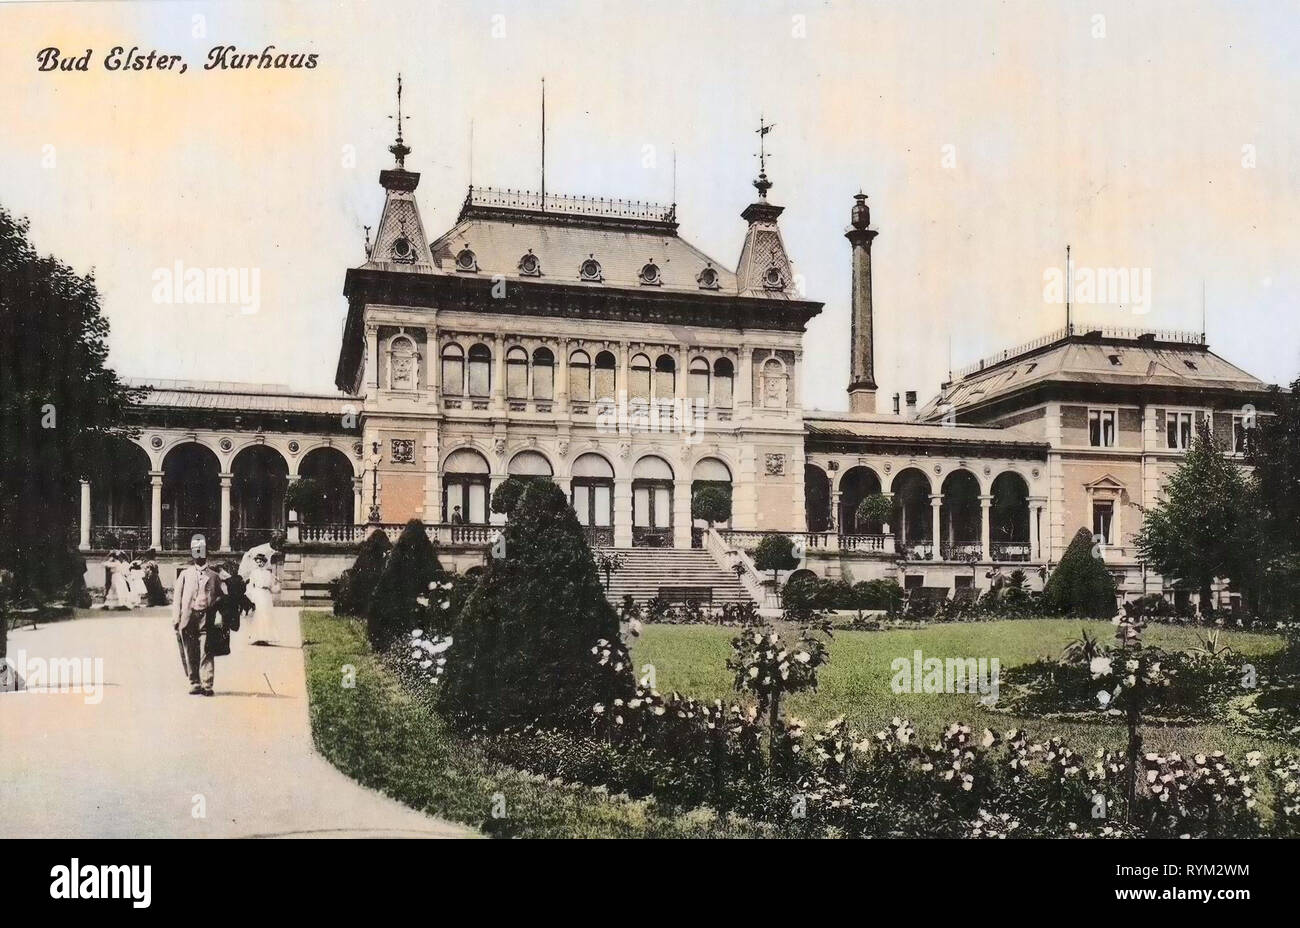 Bâtiments Spa en Saxe, 1906, Vogtlandkreis, Bad Elster, Kurhaus, Allemagne Banque D'Images